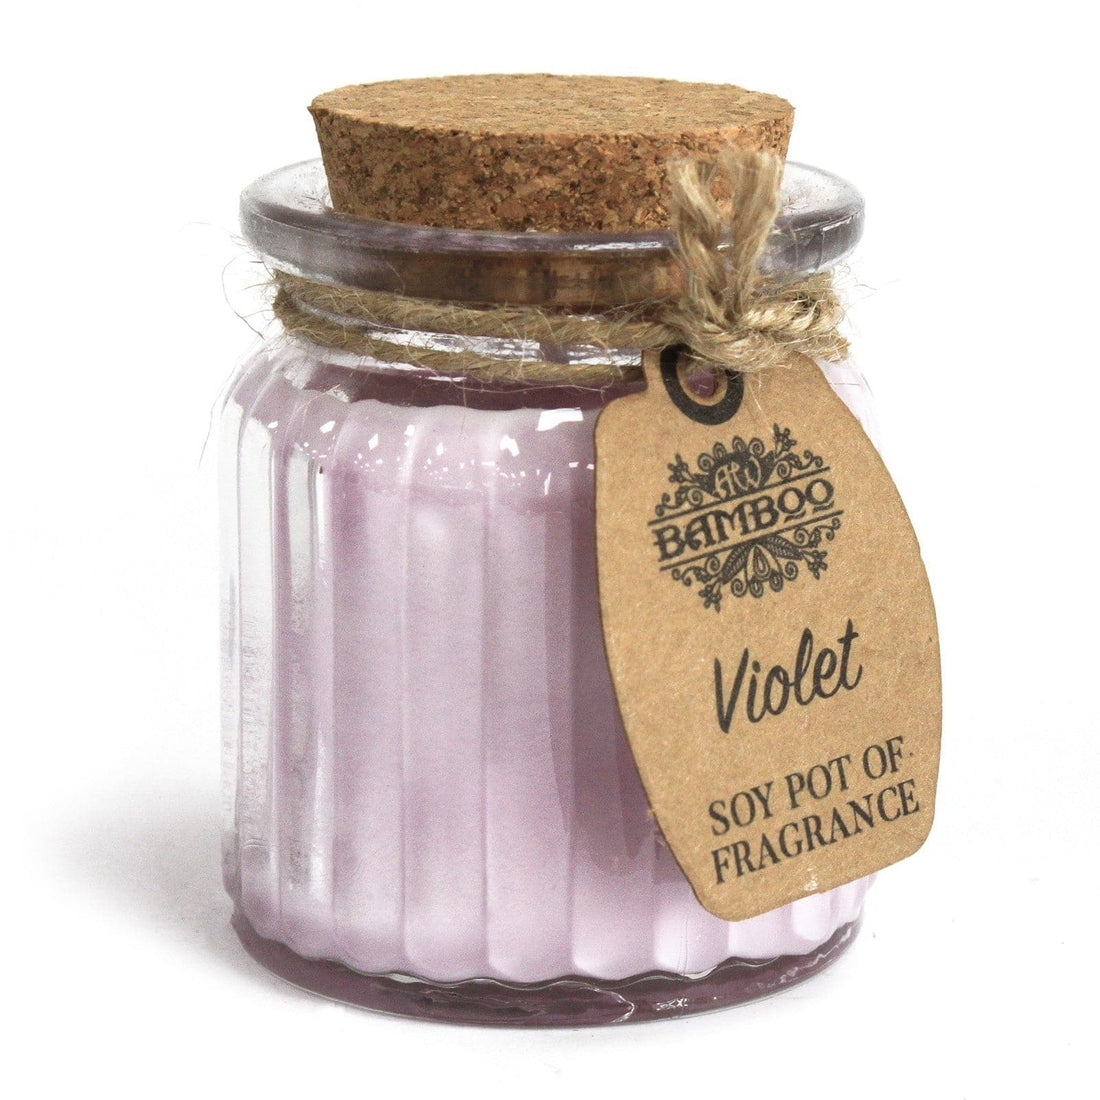 Violet Soy Pot of Fragrance Candles - best price from Maltashopper.com SOYP-04